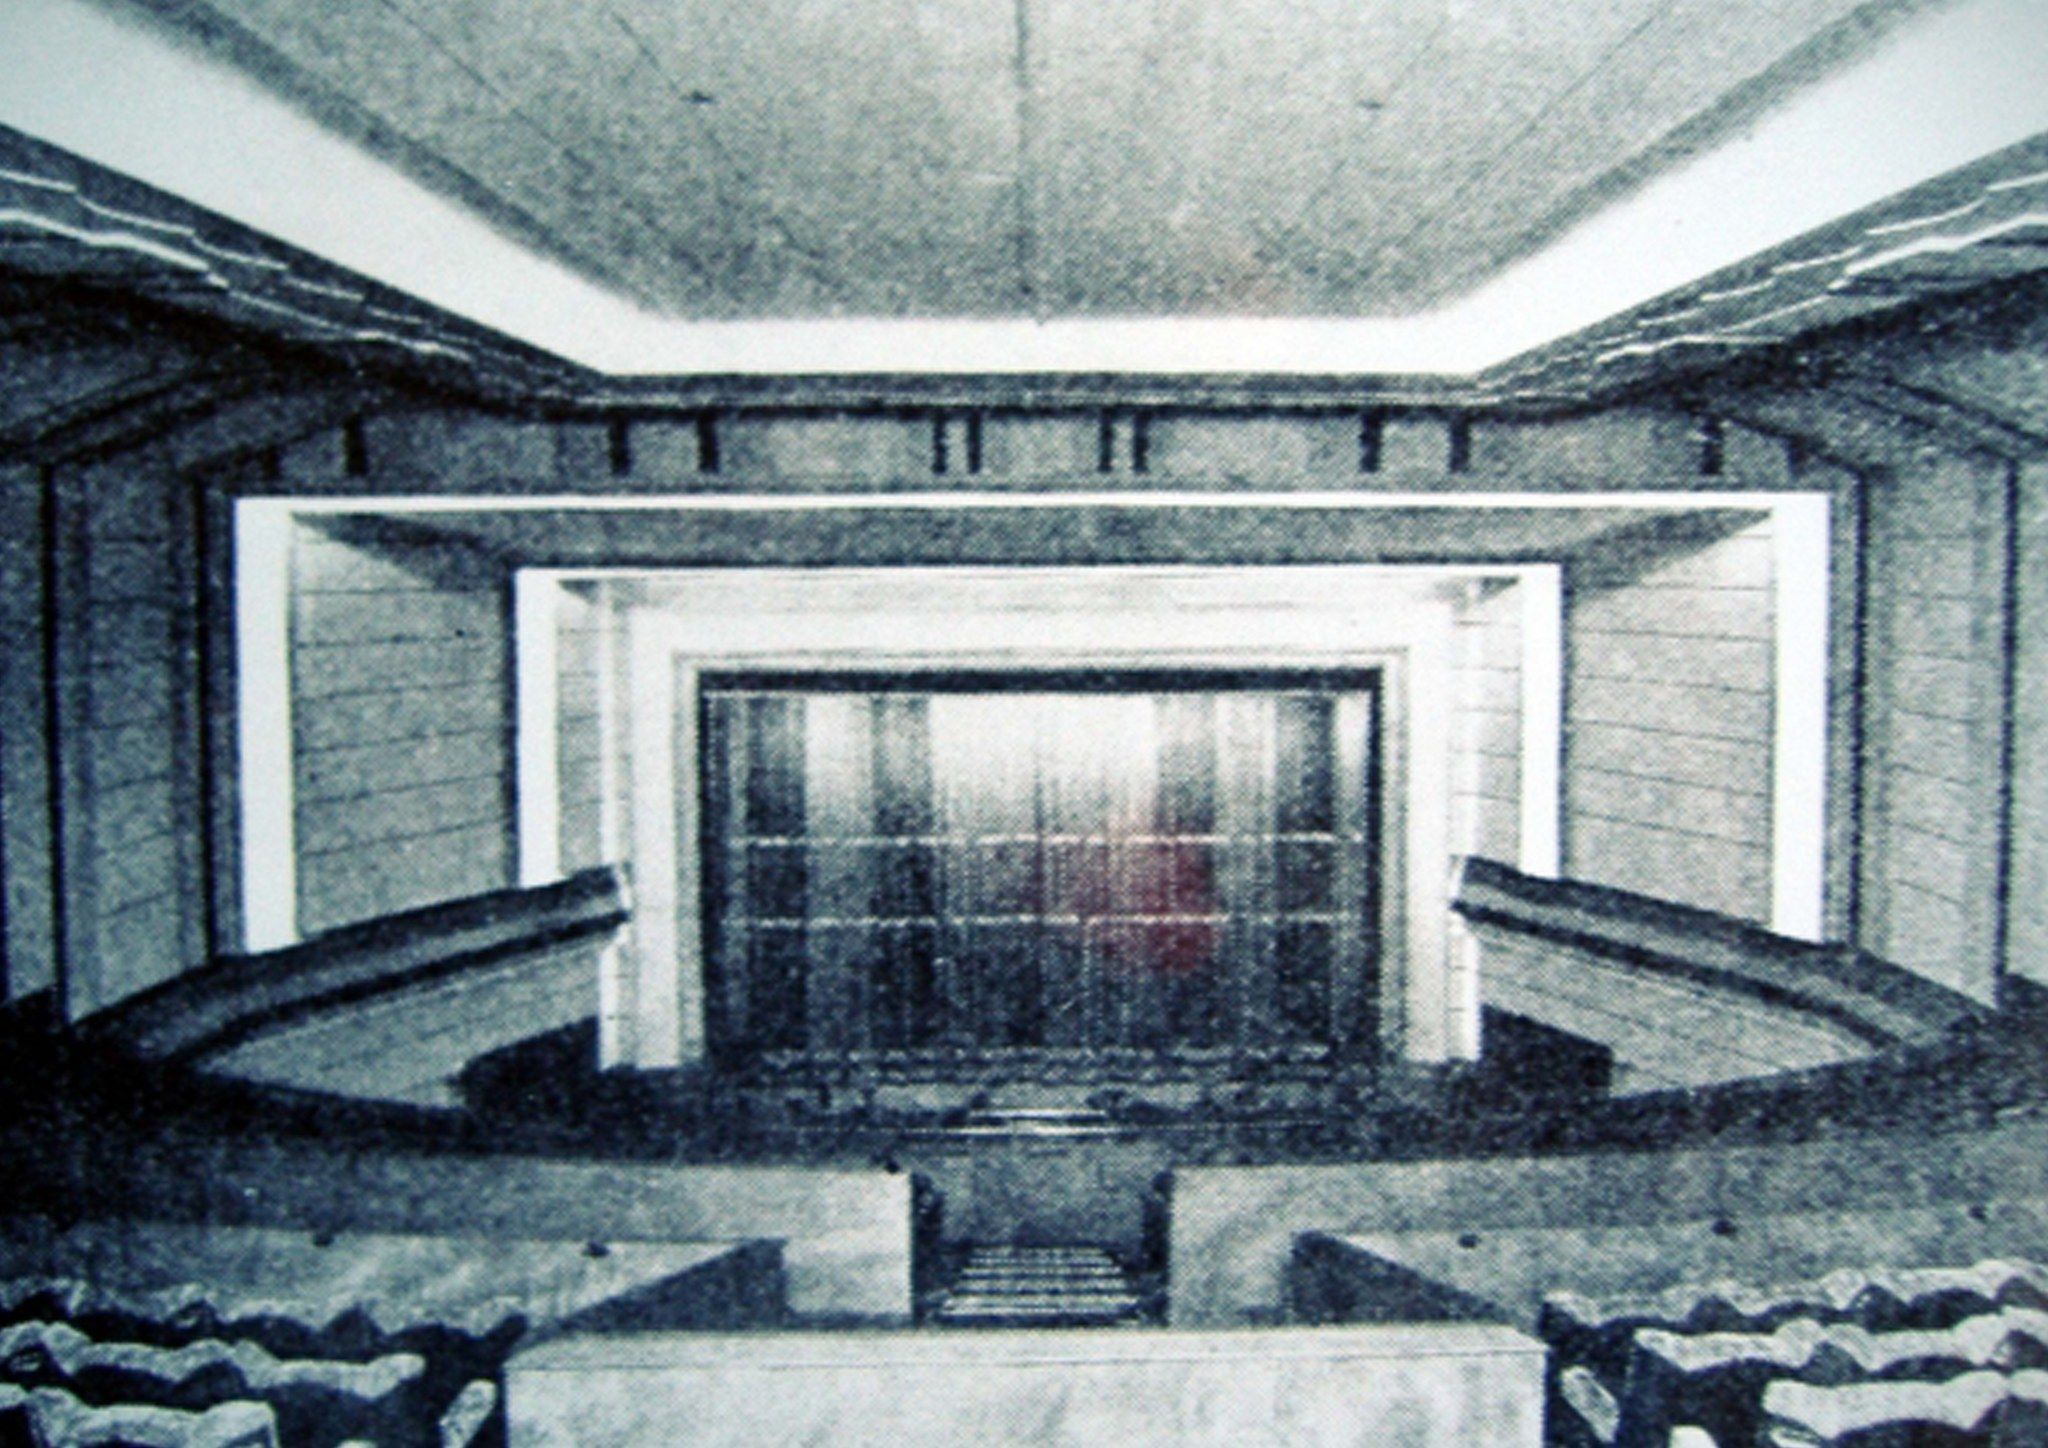 Original image of the auditoriam